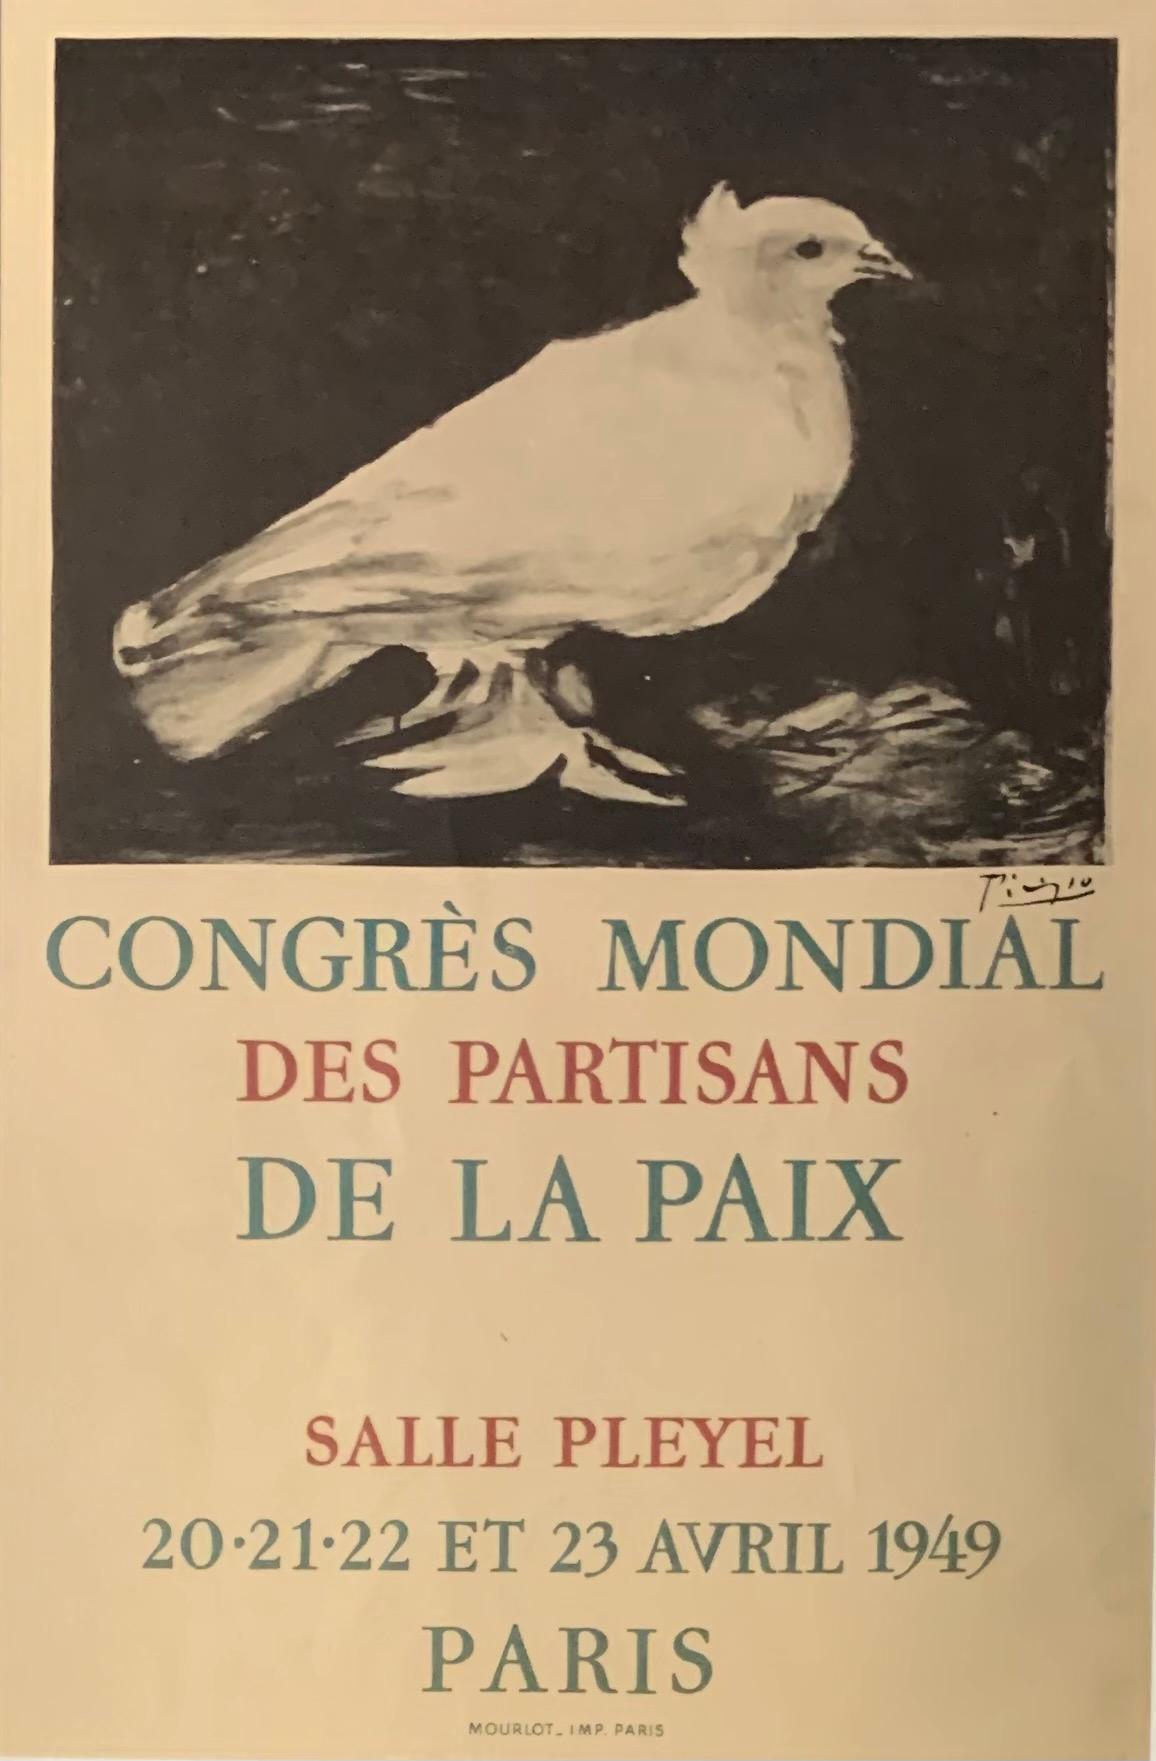 Congrès mondial des partisans de la paix, Lithograph Poster 1949 - Print by Pablo Picasso